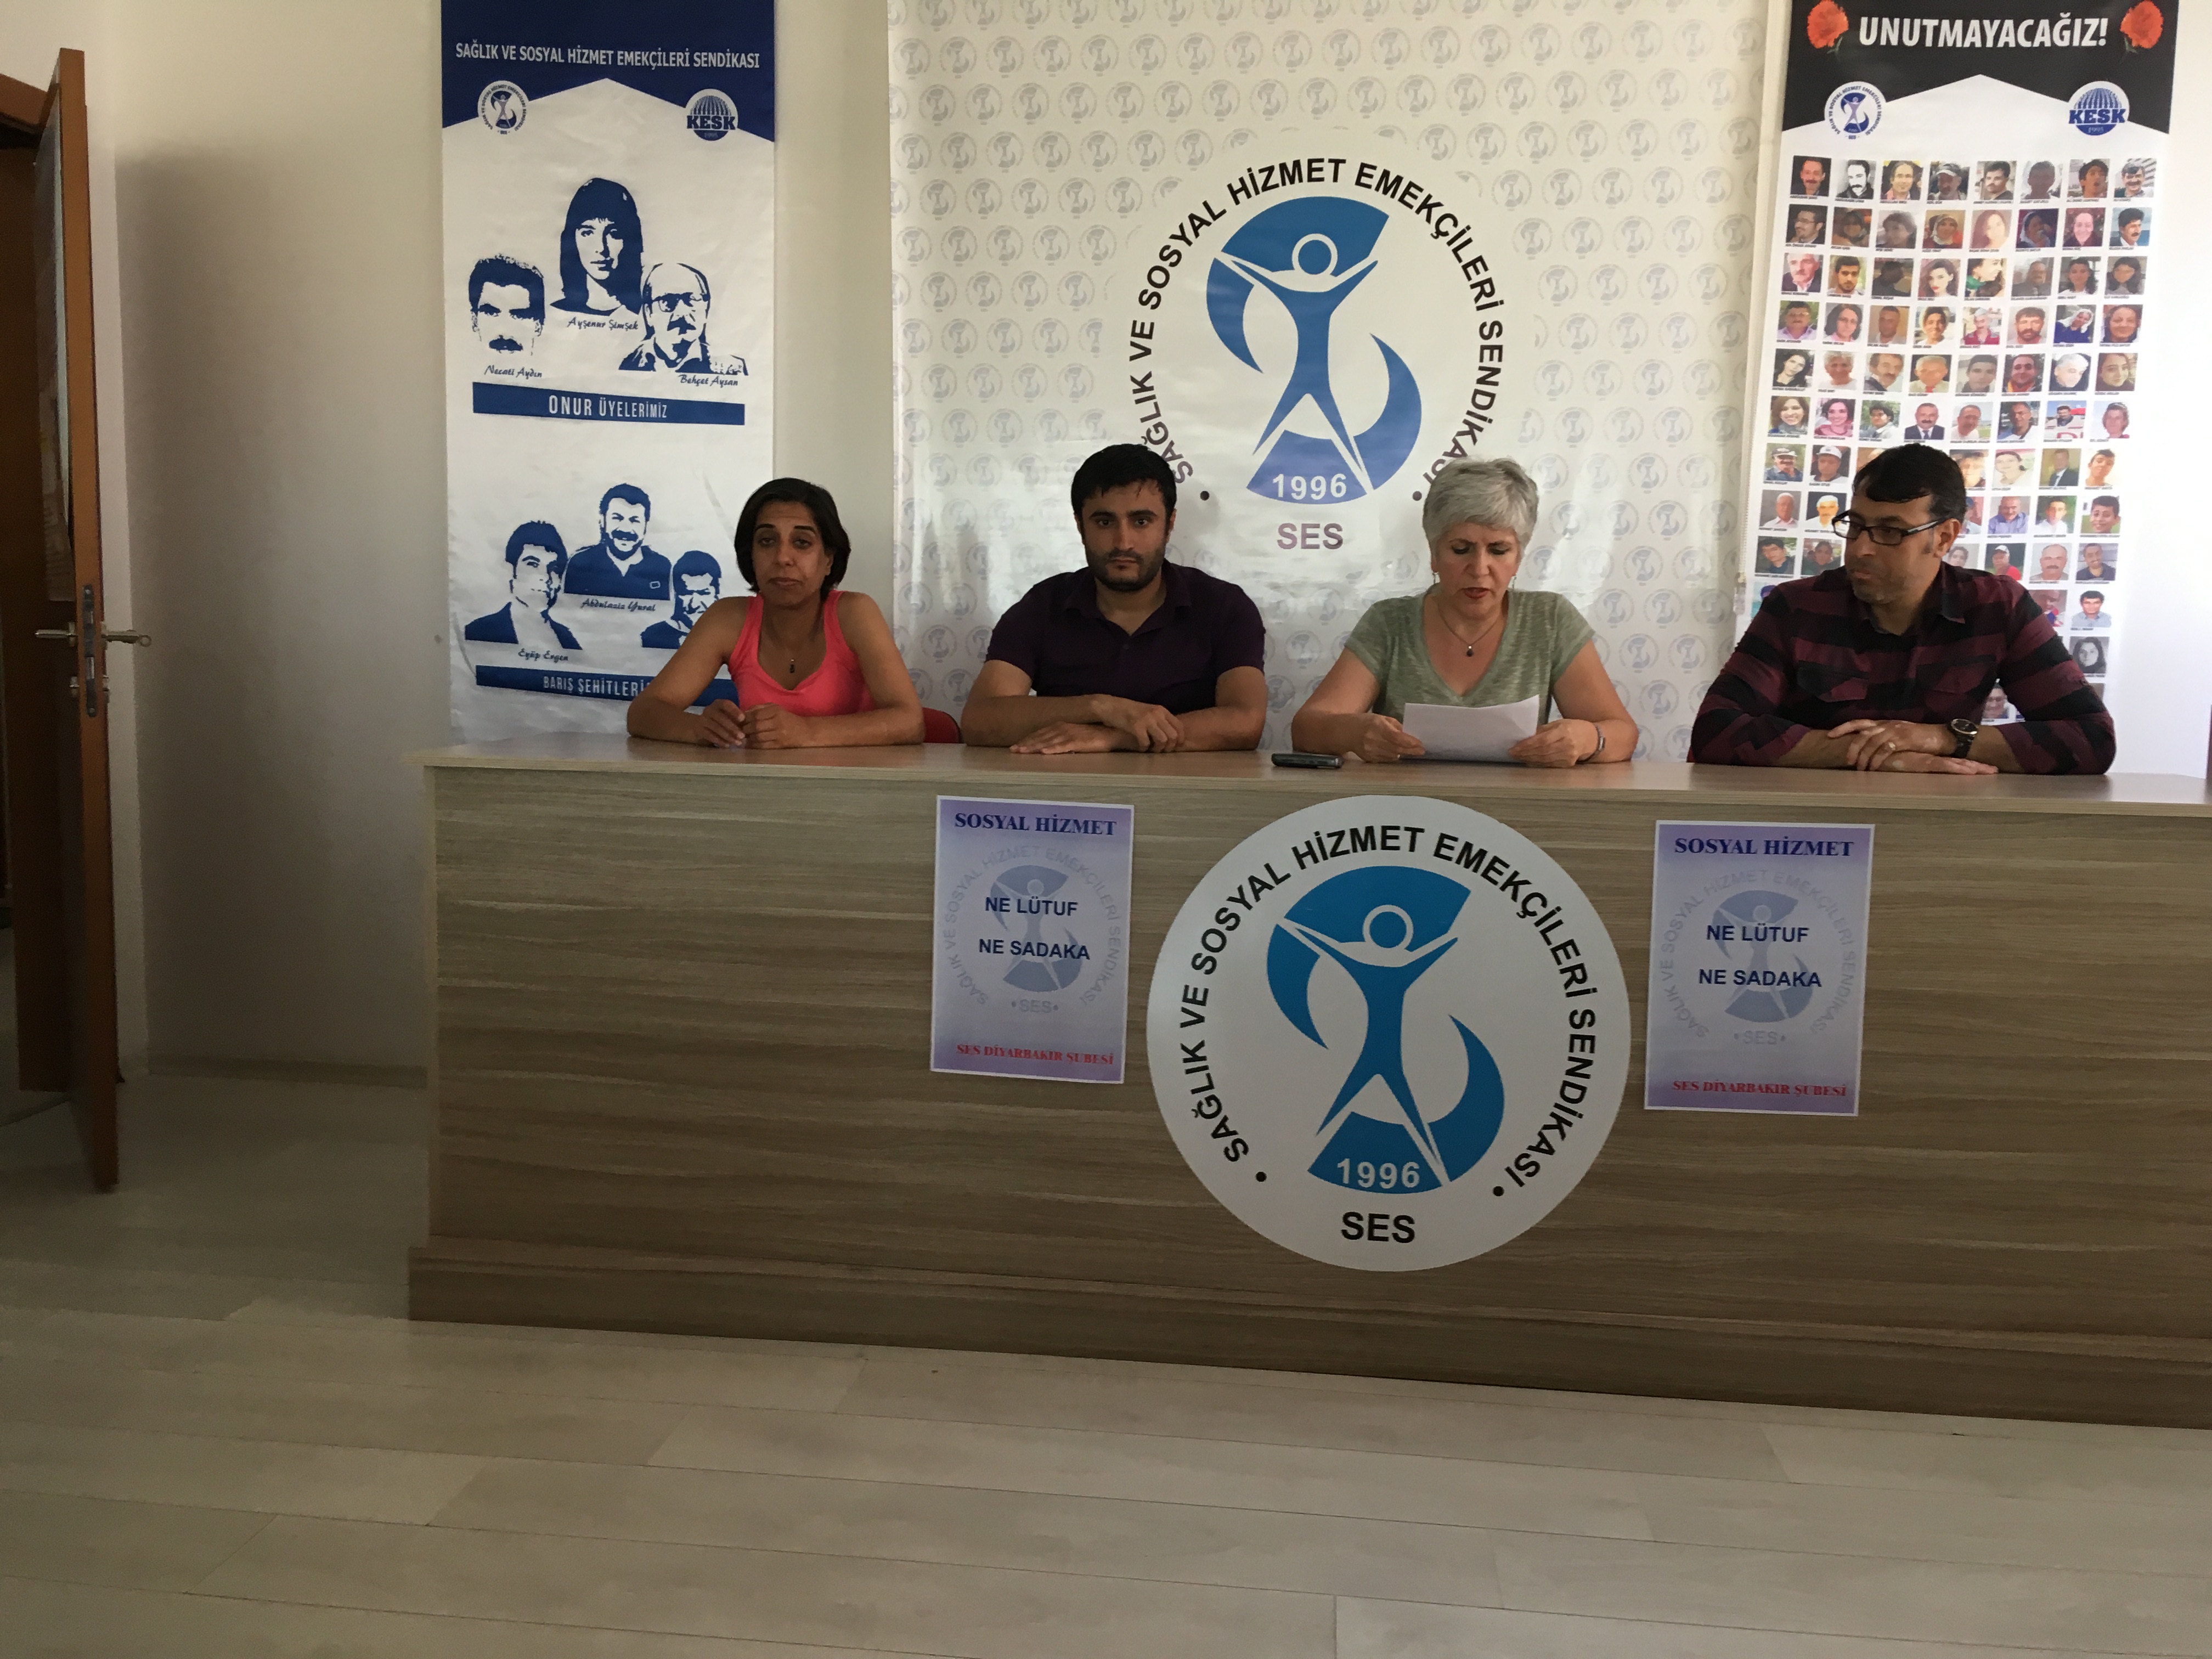 Diyarbakır Şubemizden Seçim Hesabı Yapan Aile ve Sosyal Politikalar Bakanlığı’na Tepki